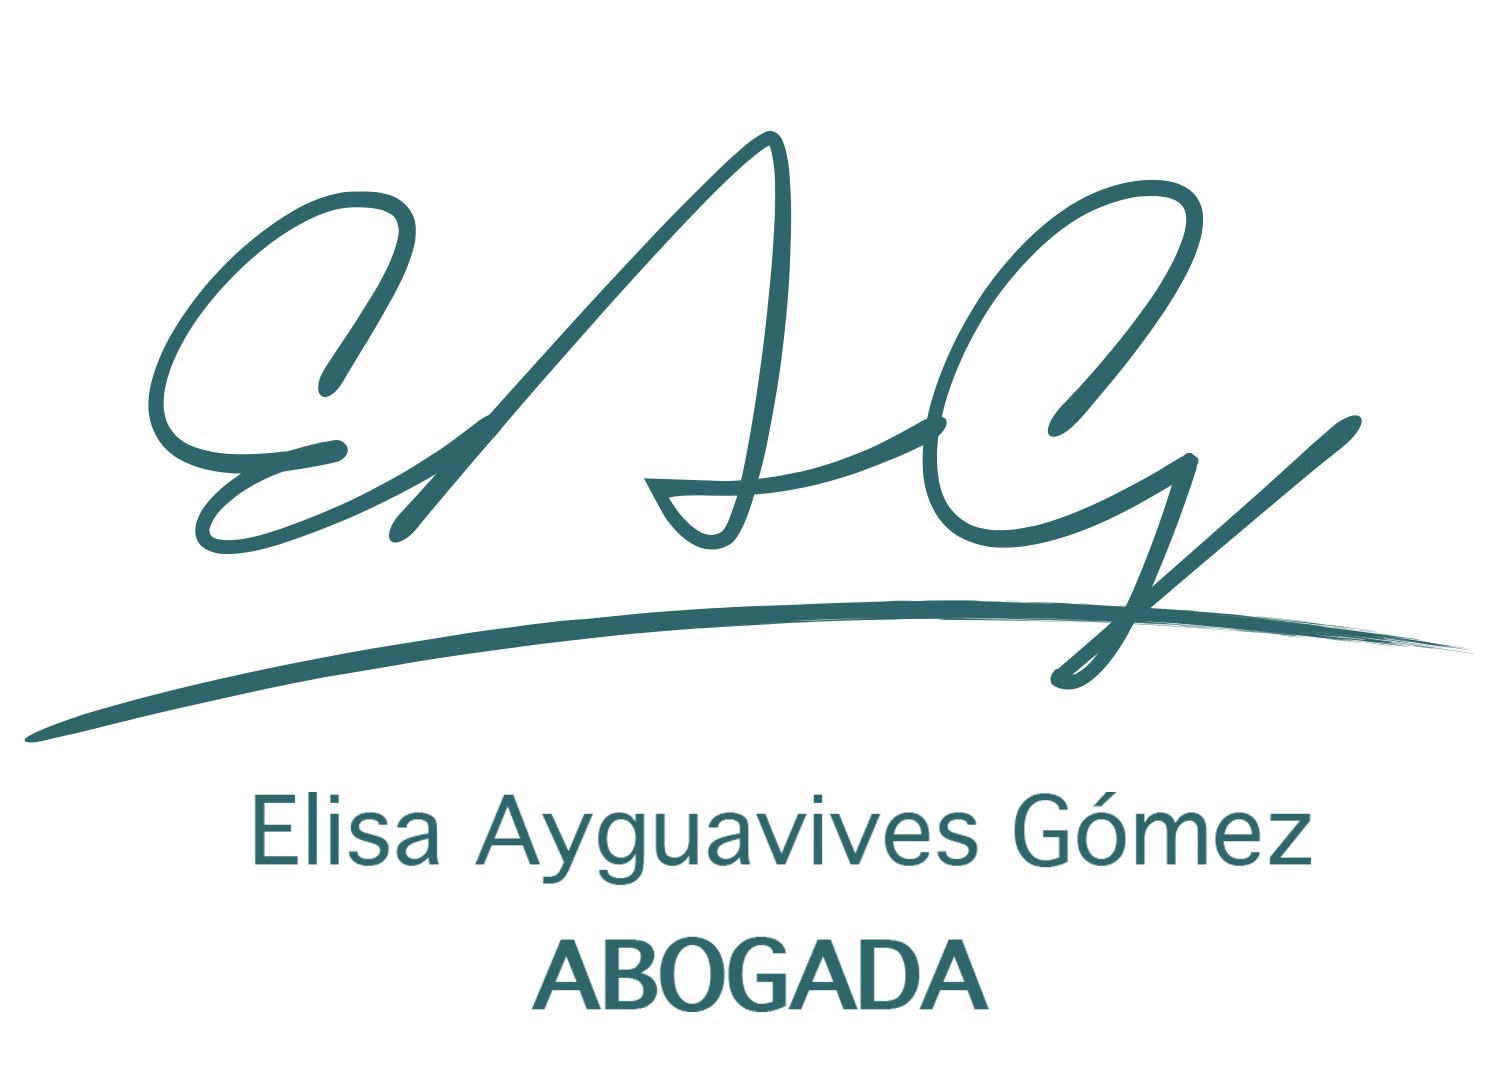 AbogadosEAG – Elisa Ayguavives Gómez – ABOGADA